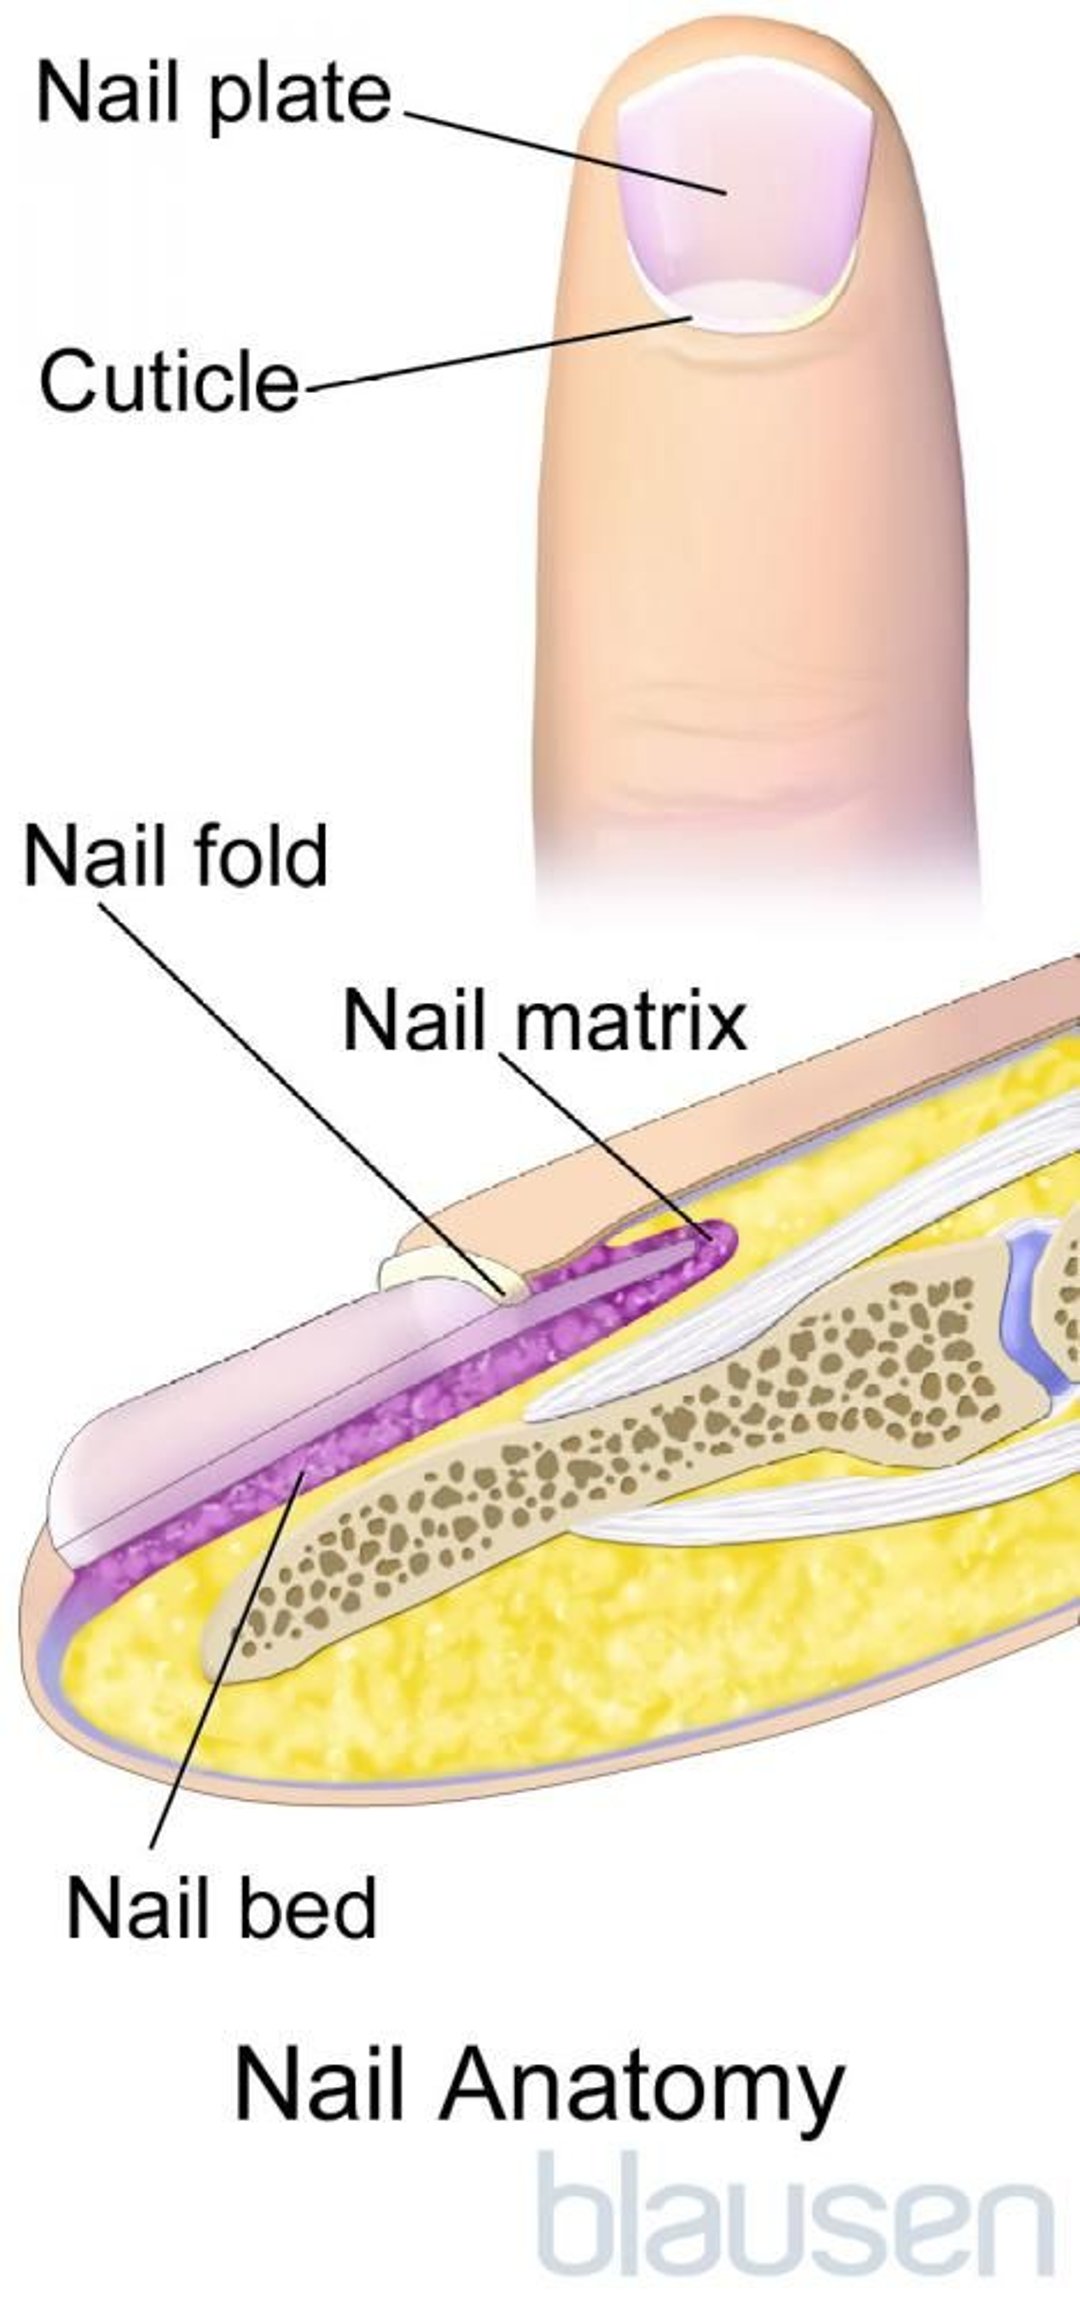 Anatomía de la uña de los dedos de la mano